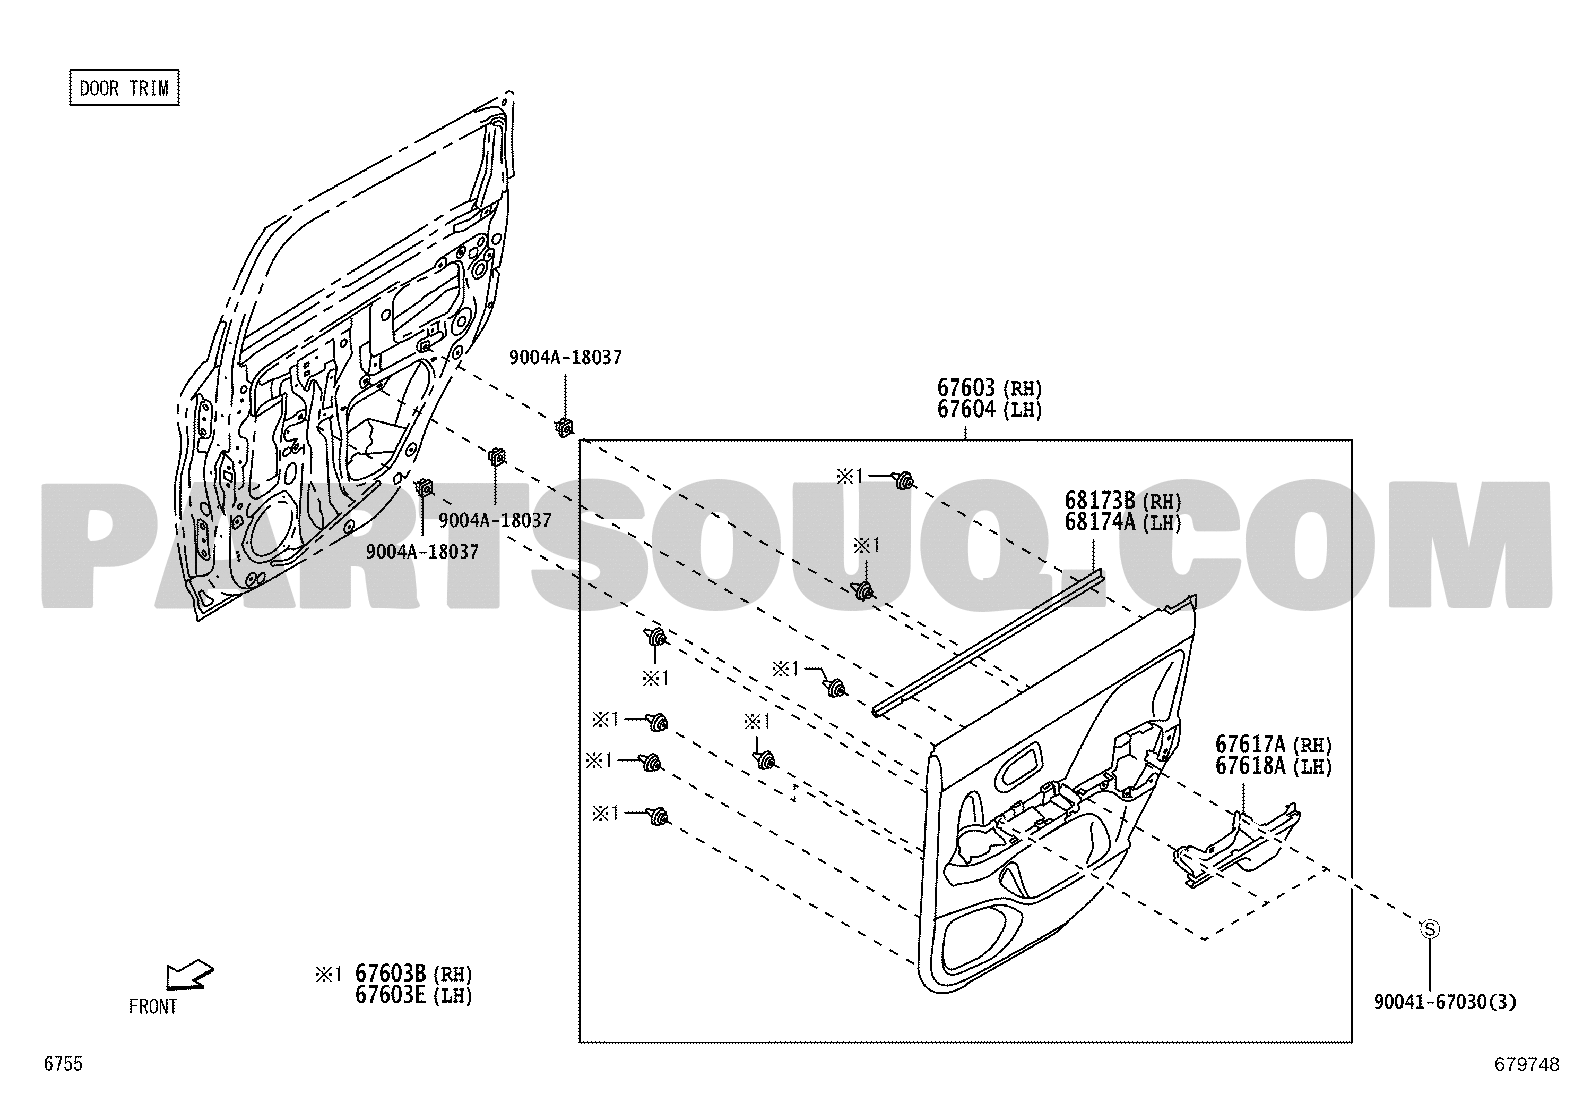 Body/Interior, Toyota RUSH F800LE-GMMFP F800